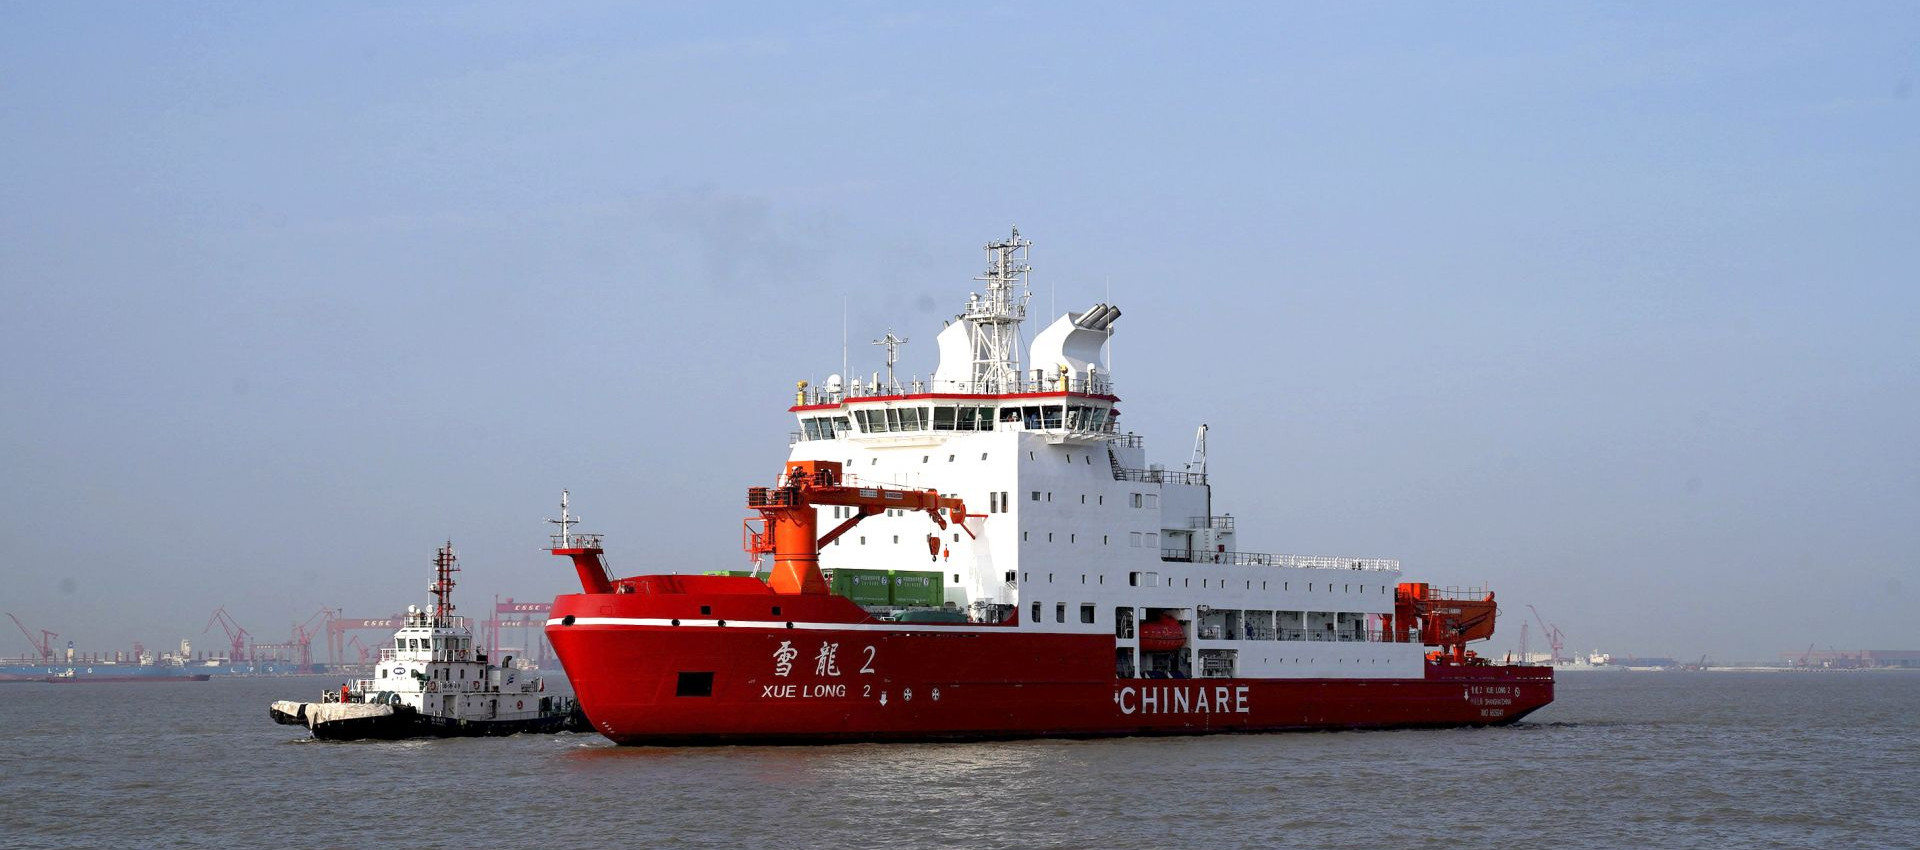 أحدث حالة شركة حول تم استخدام سلك اللحام Longteng في سفينة الاستكشاف القطبية Xuelong